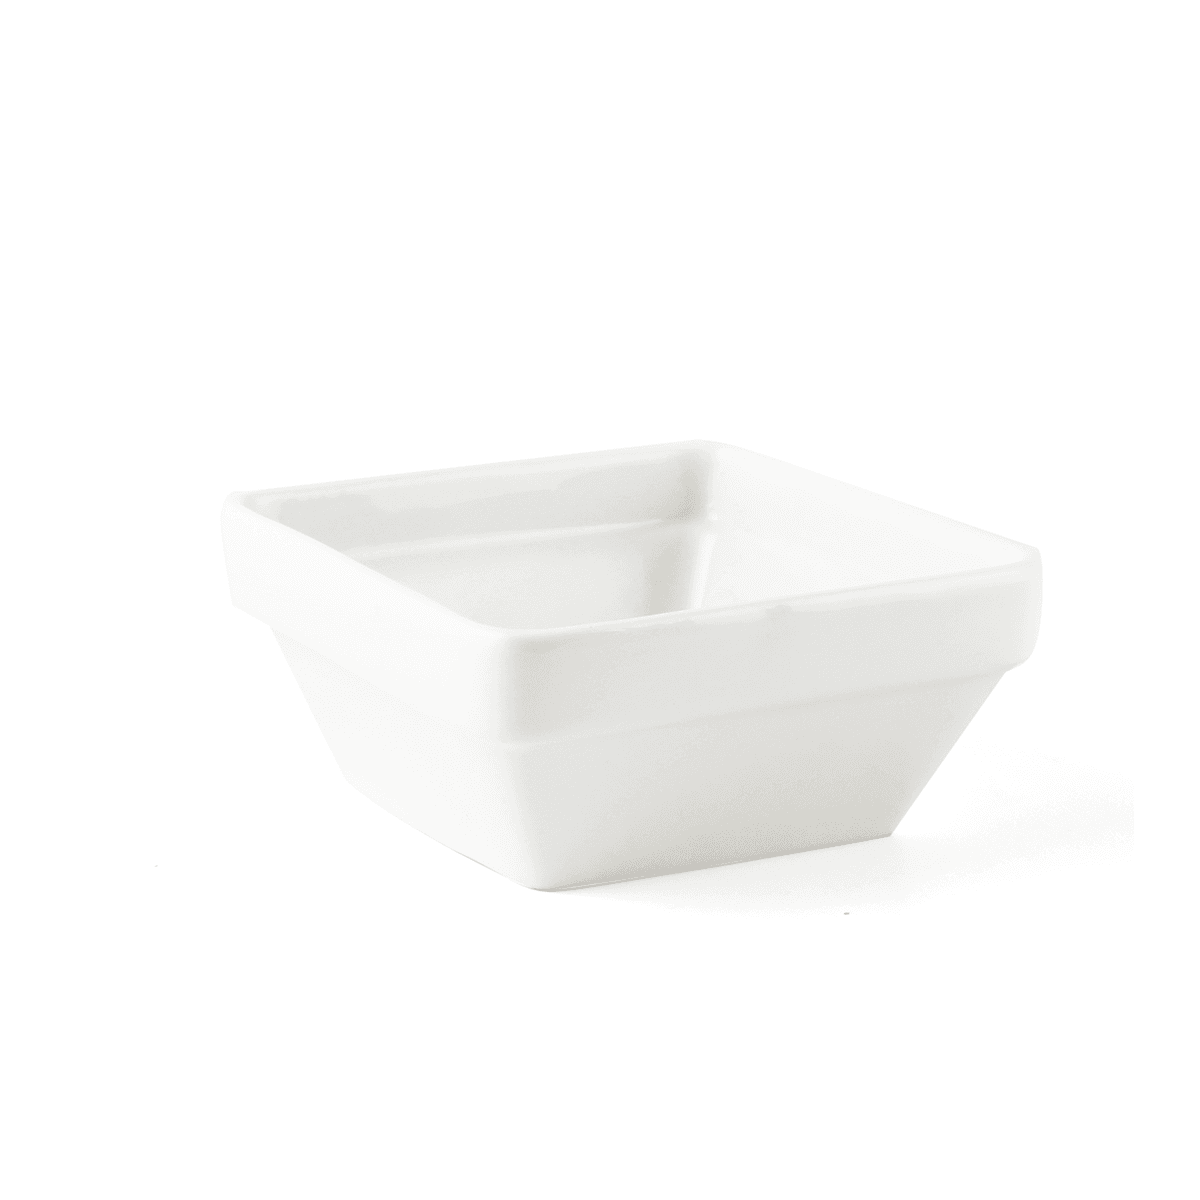 وعاء بورسلين عاجي مربع قابل للتكديس مقاس 10 سم ب2ب B2B Ivory Porcelain Stackable Square Bowl